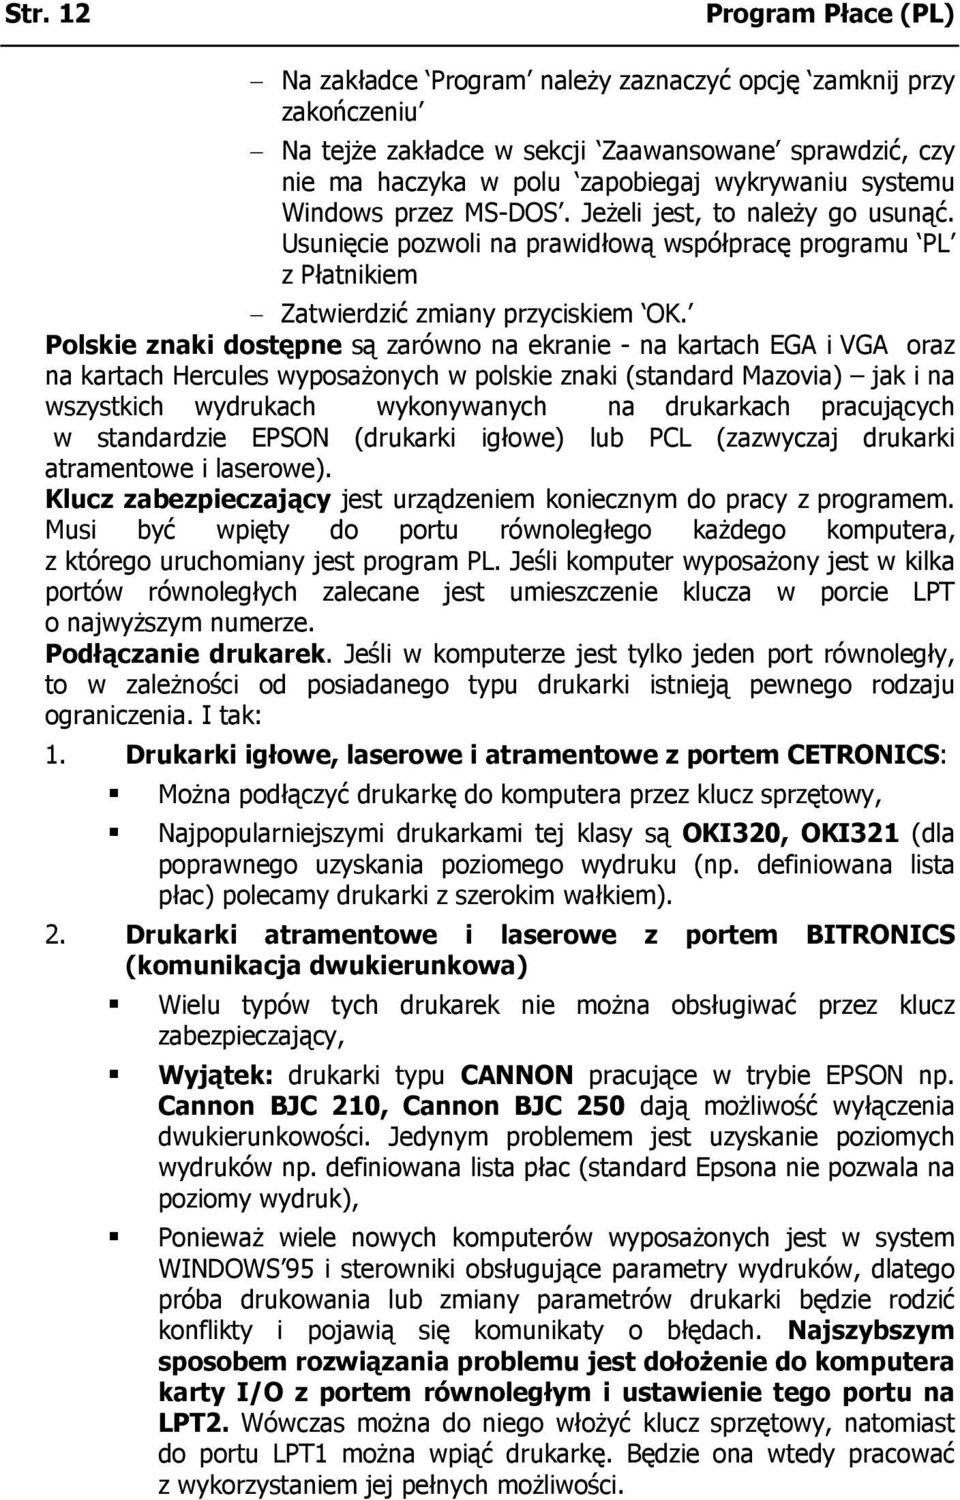 Polskie znaki dostępne są zarówno na ekranie - na kartach EGA i VGA oraz na kartach Hercules wyposażonych w polskie znaki (standard Mazovia) jak i na wszystkich wydrukach wykonywanych na drukarkach